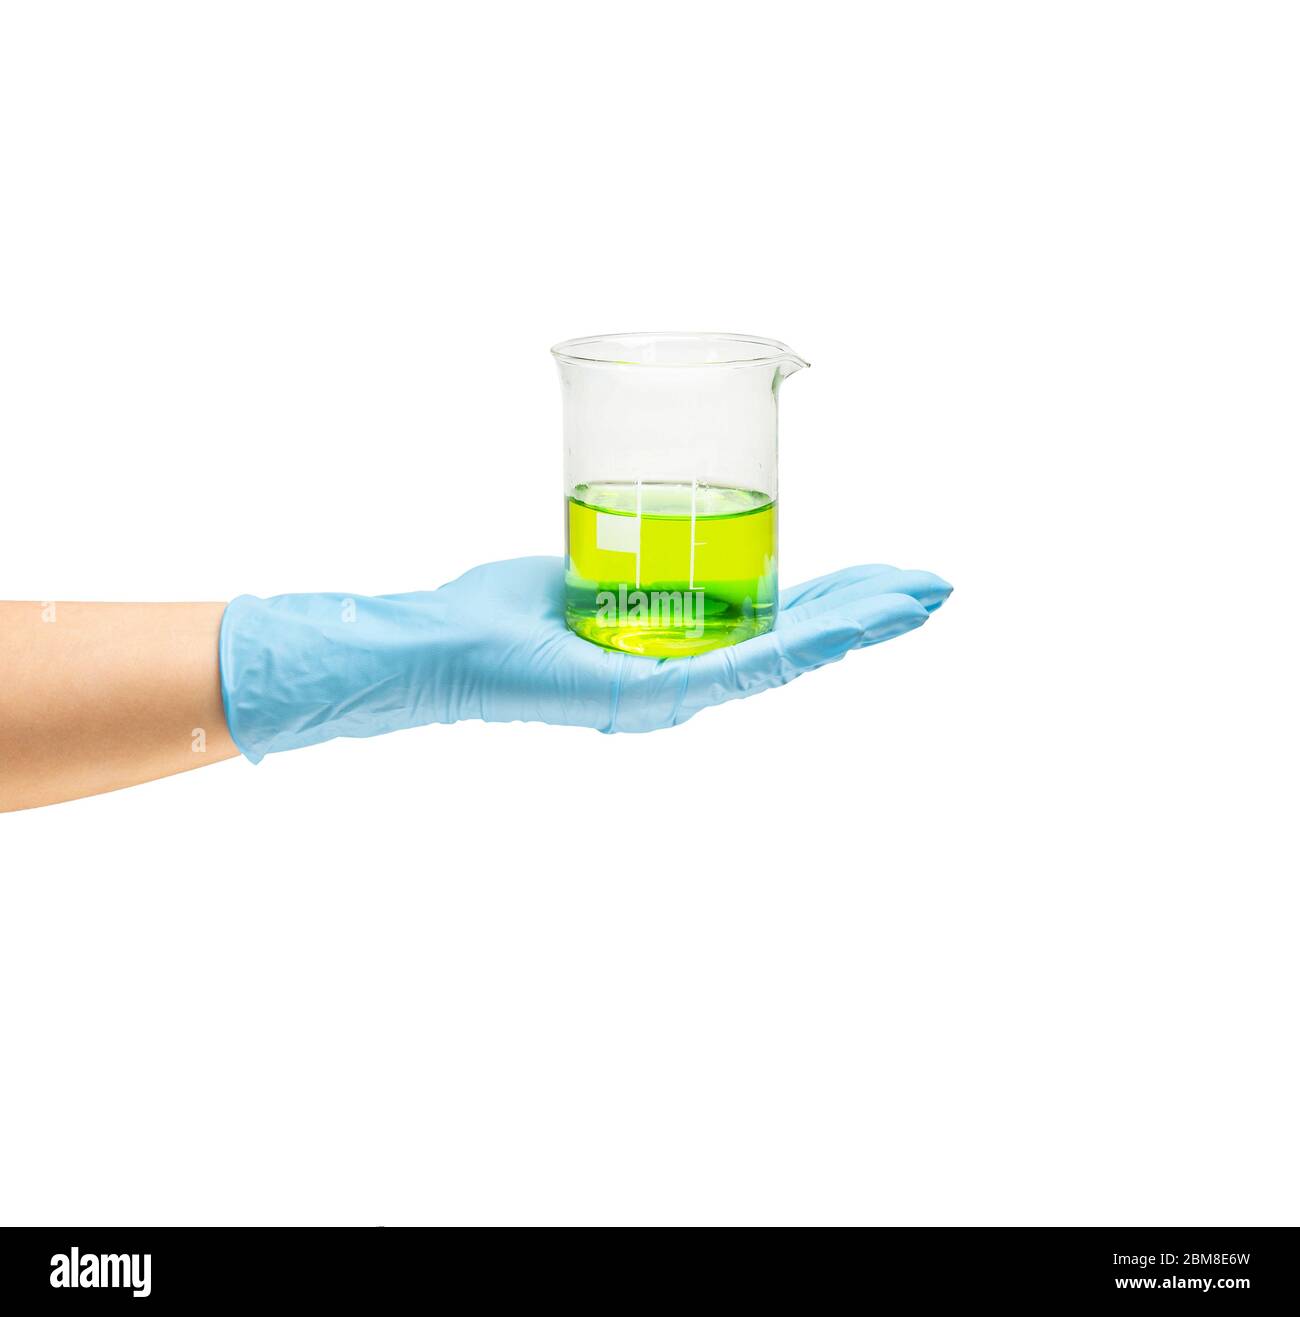 Weibliche Hand eines Sanitäter in einem sicheren blauen Gummihandschuh, in dem die Flüssigkeit ist ein grüner Impfstoff, die Entwicklung von Medikamenten. Isolieren Sie auf weißem Hintergrund. Stockfoto